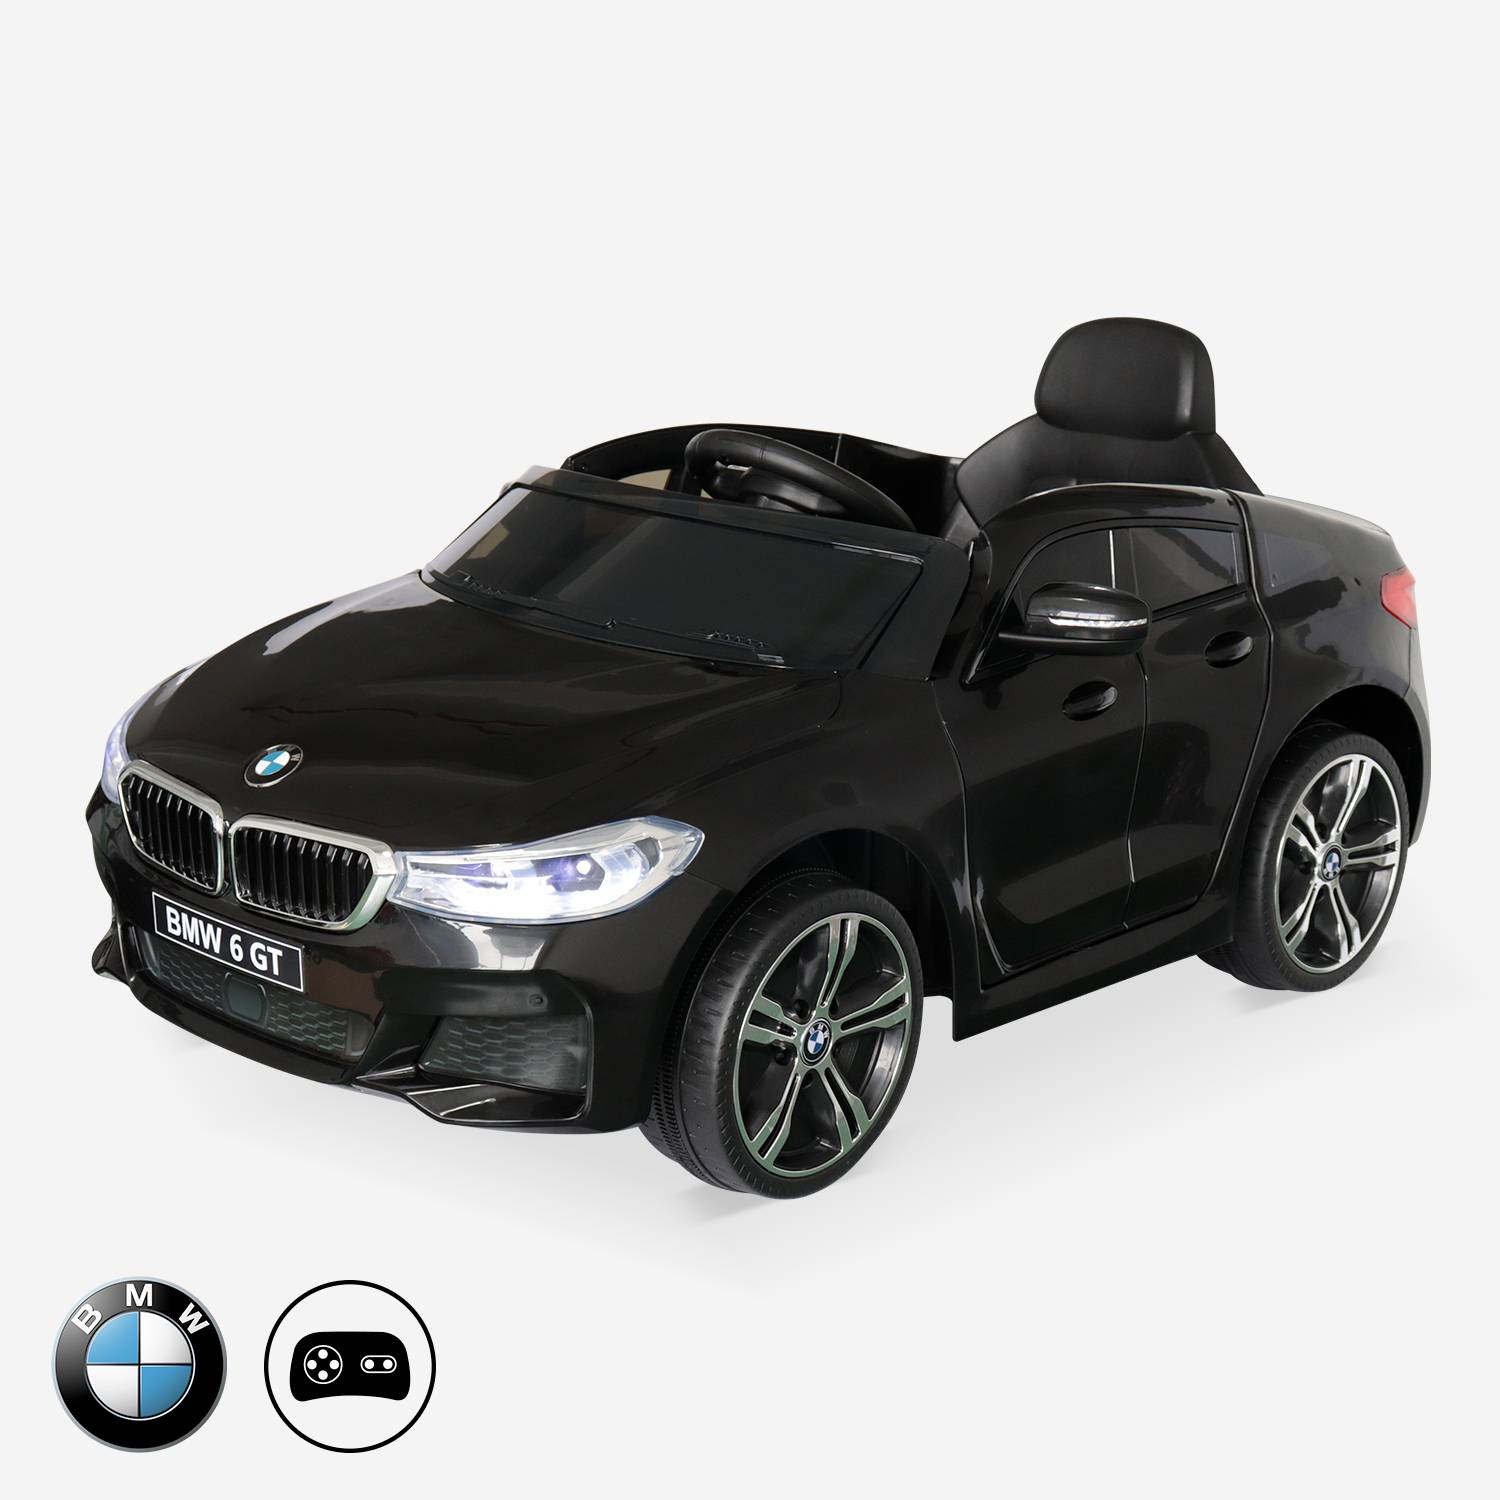 BMW GT6 Gran Turismo zwart, elektrische auto 12V, 1 plaats, cabriolet voor kinderen met autoradio en afstandsbediening Photo2